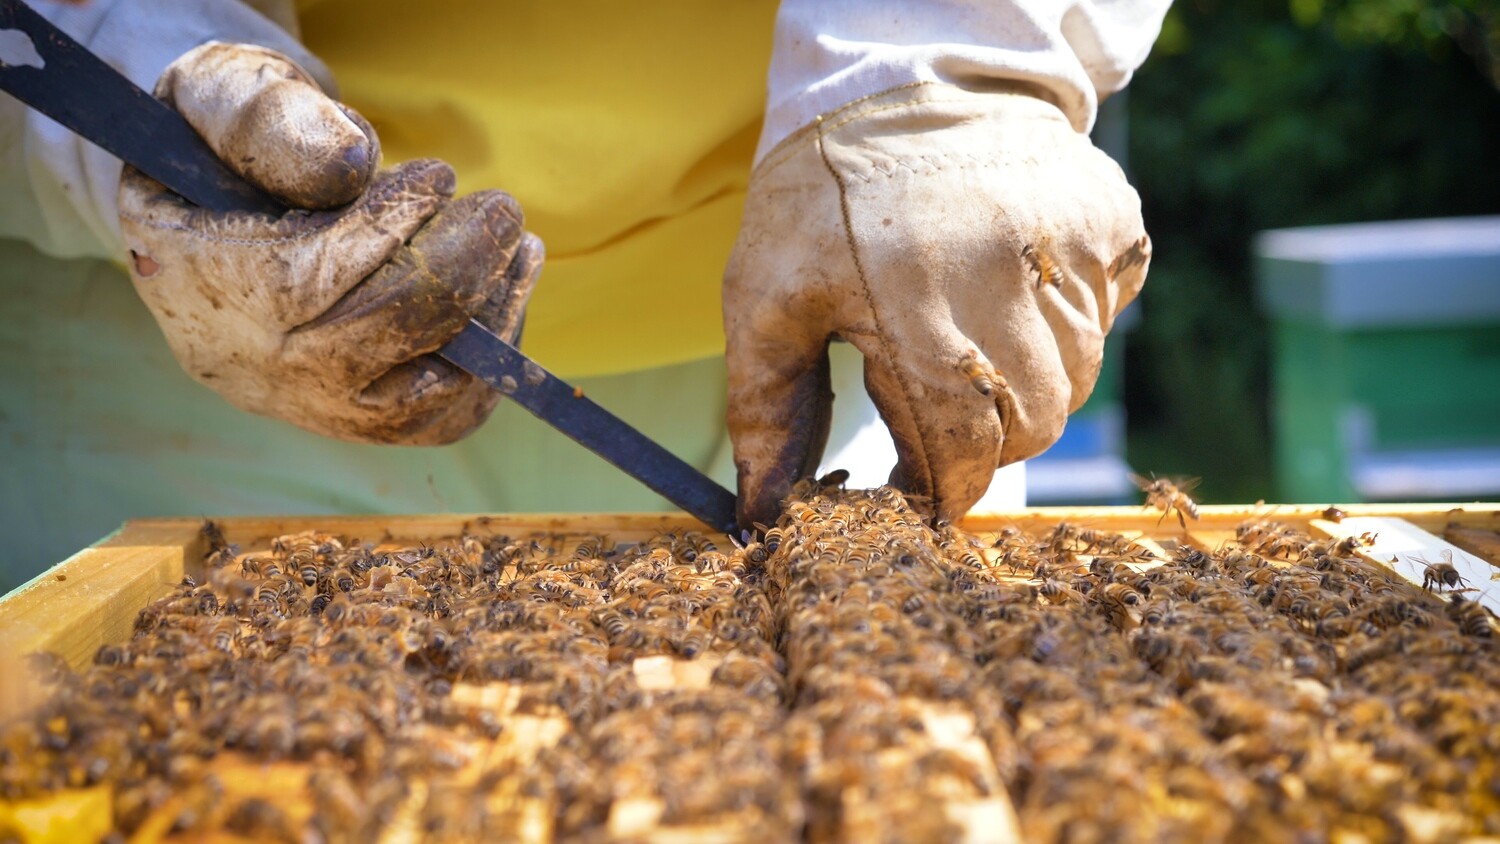 Formation en apiculture niveau débutant dimanche 30 mai 2021 10h00